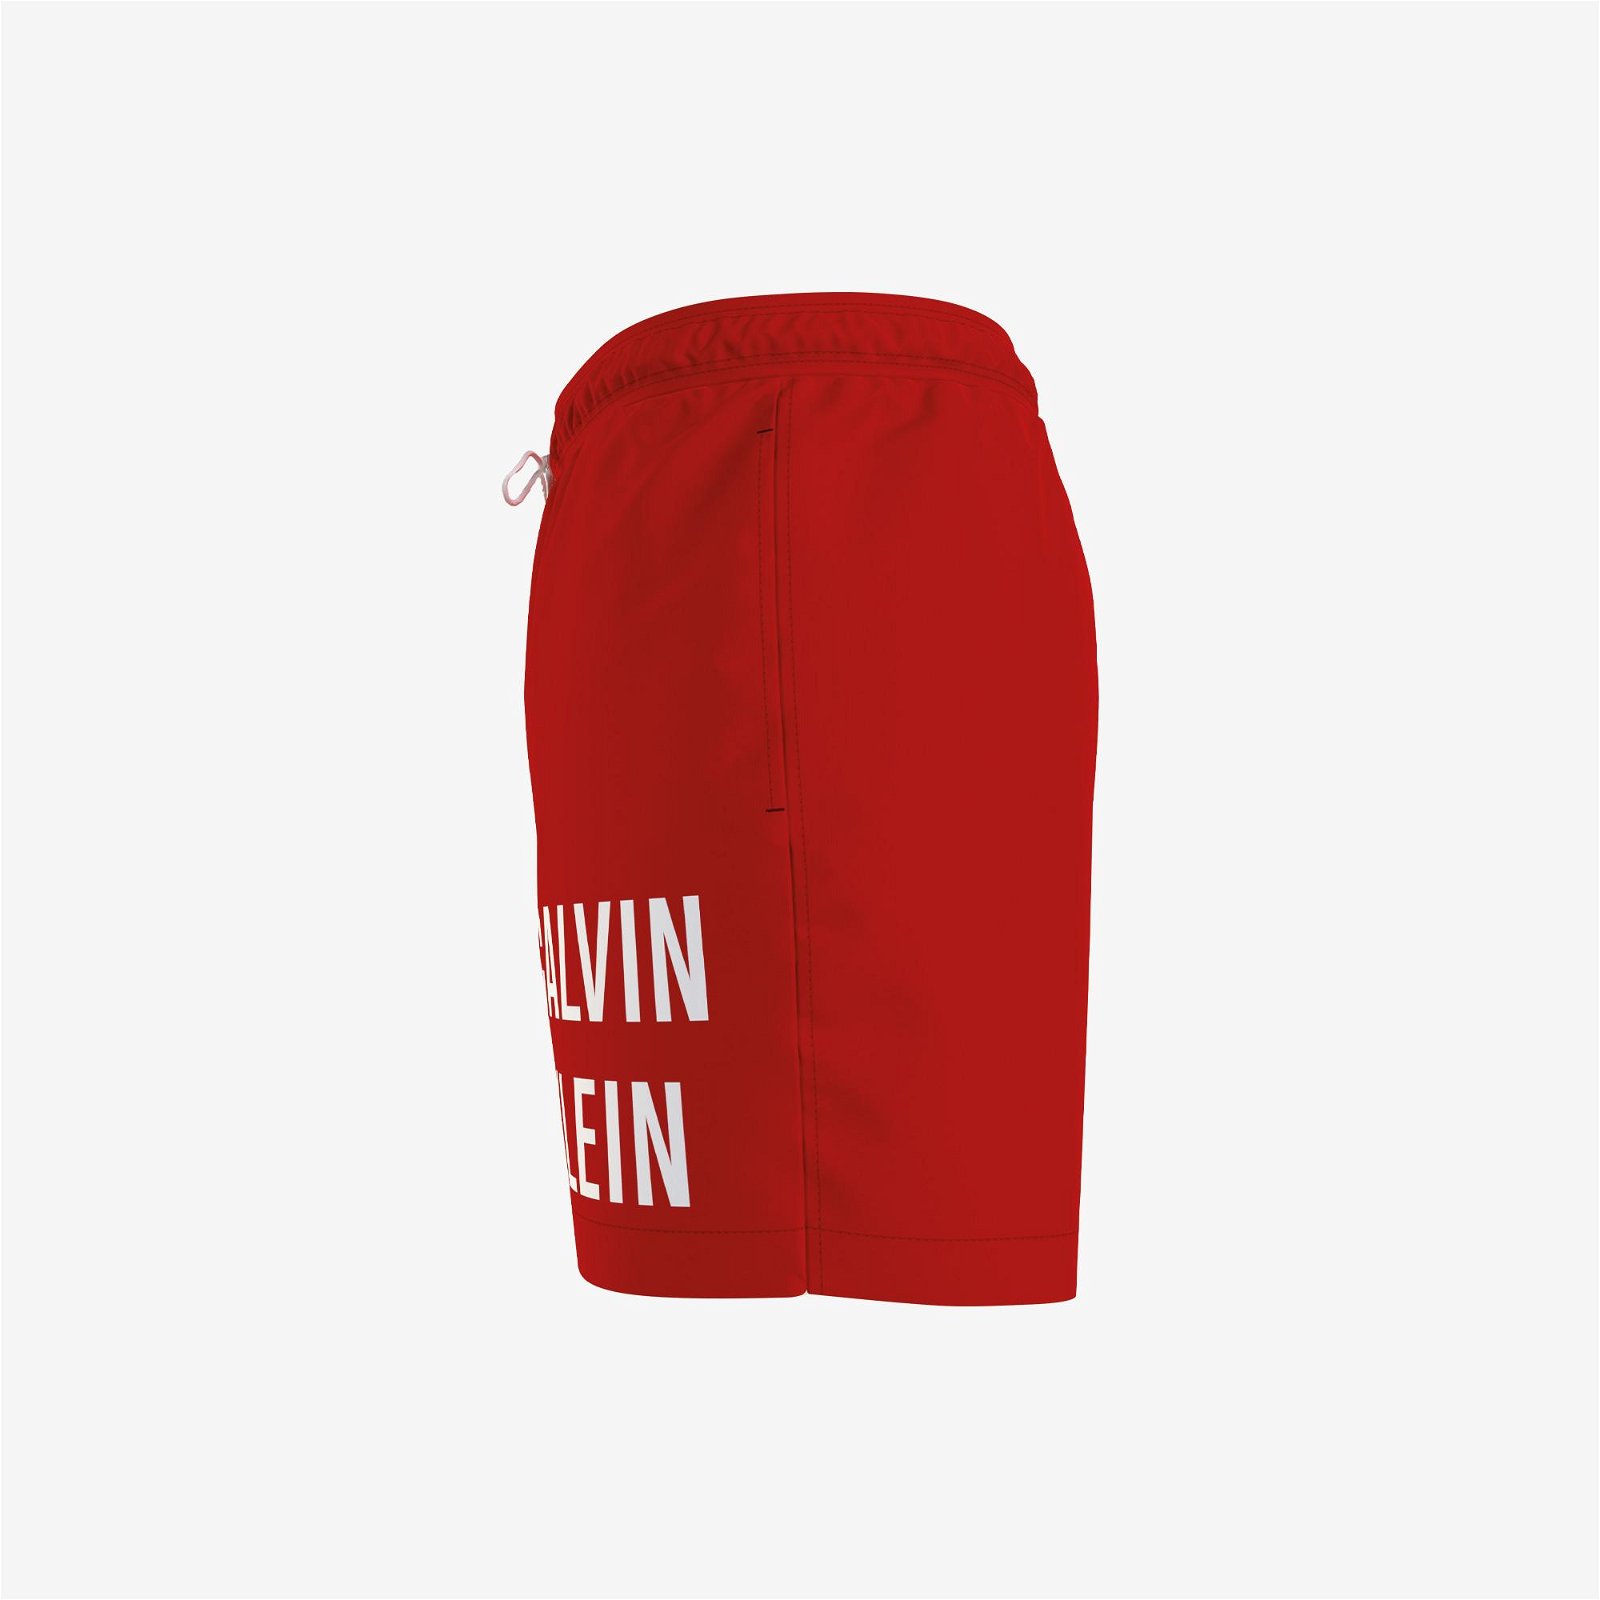 Calvin Klein Medium Drawstring Erkek Kırmızı Mayo Şort